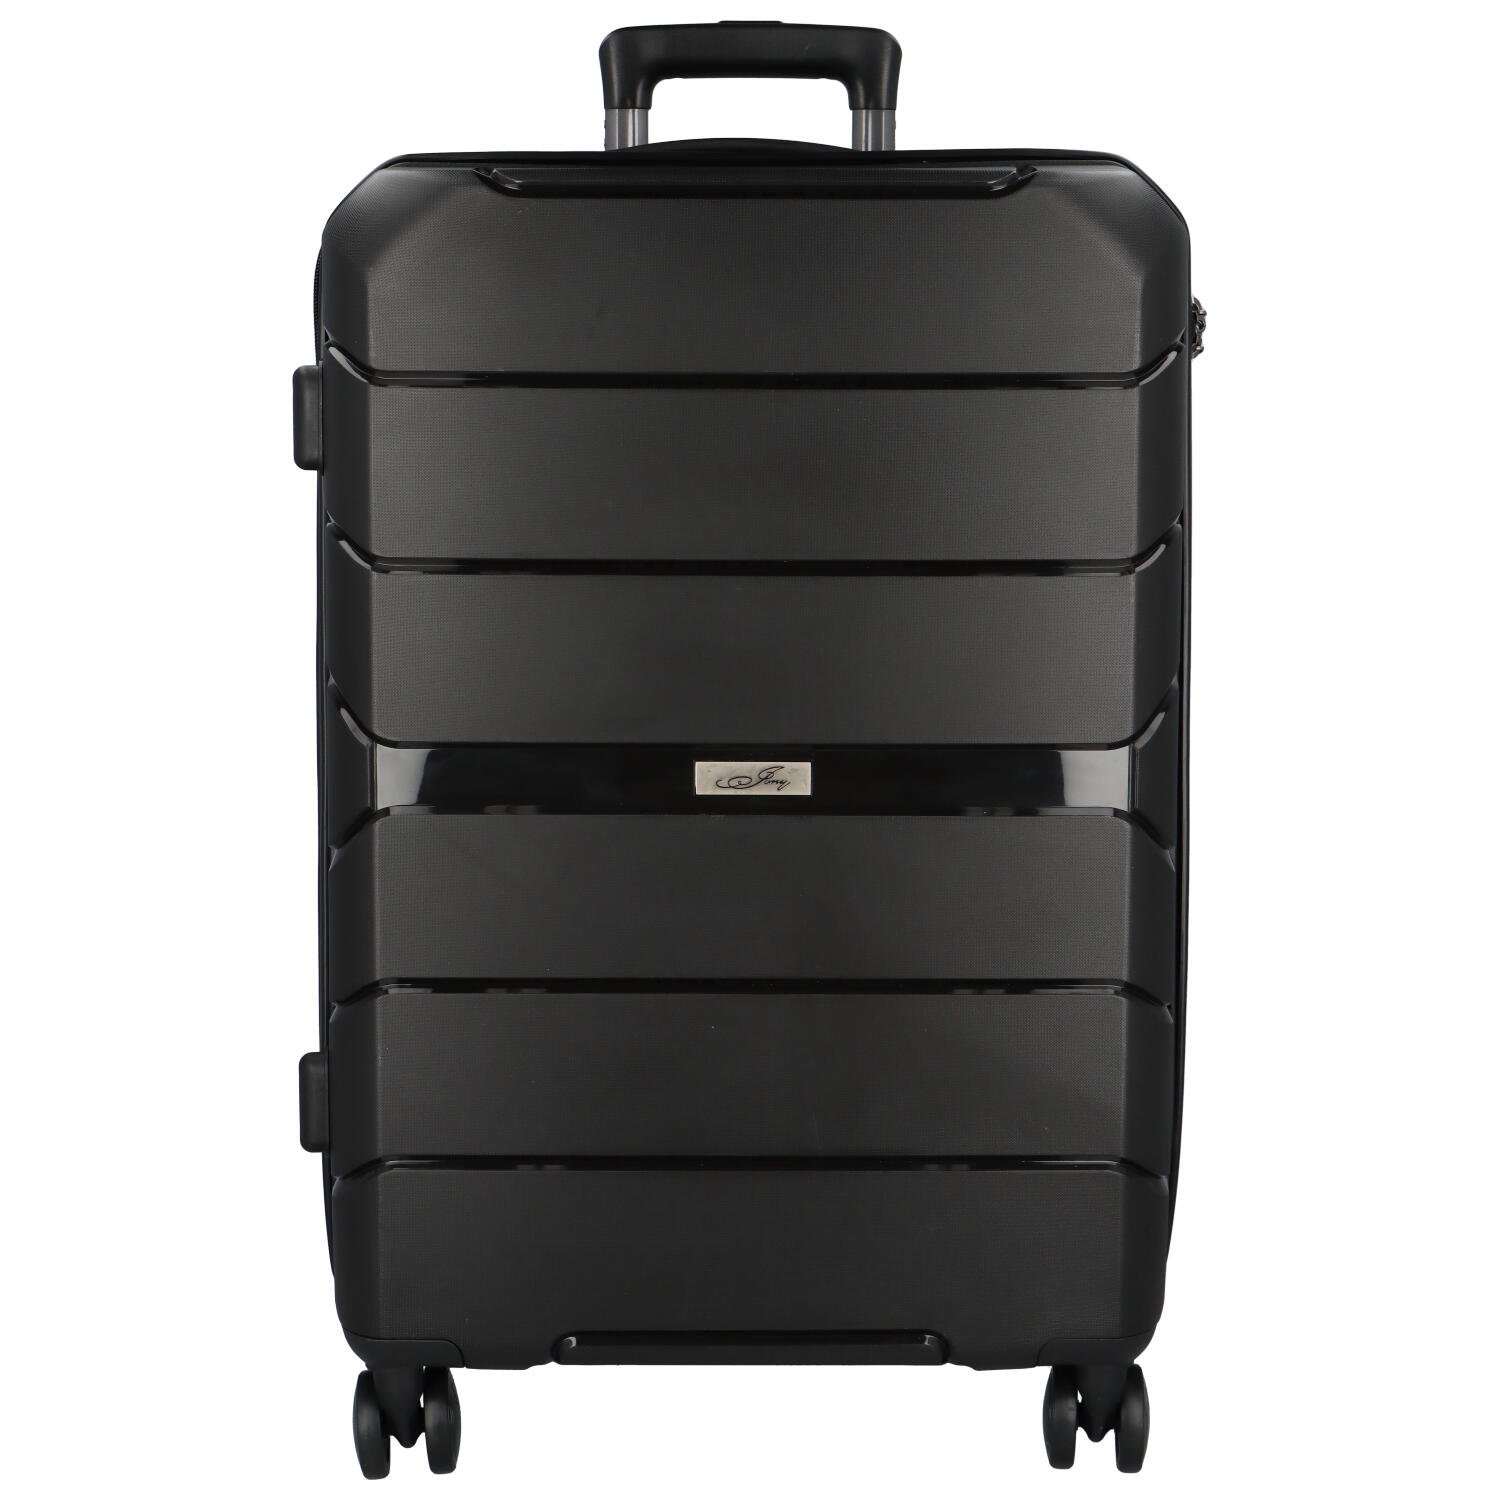 Cestovní plastový kufr Franco velikosti M, černý